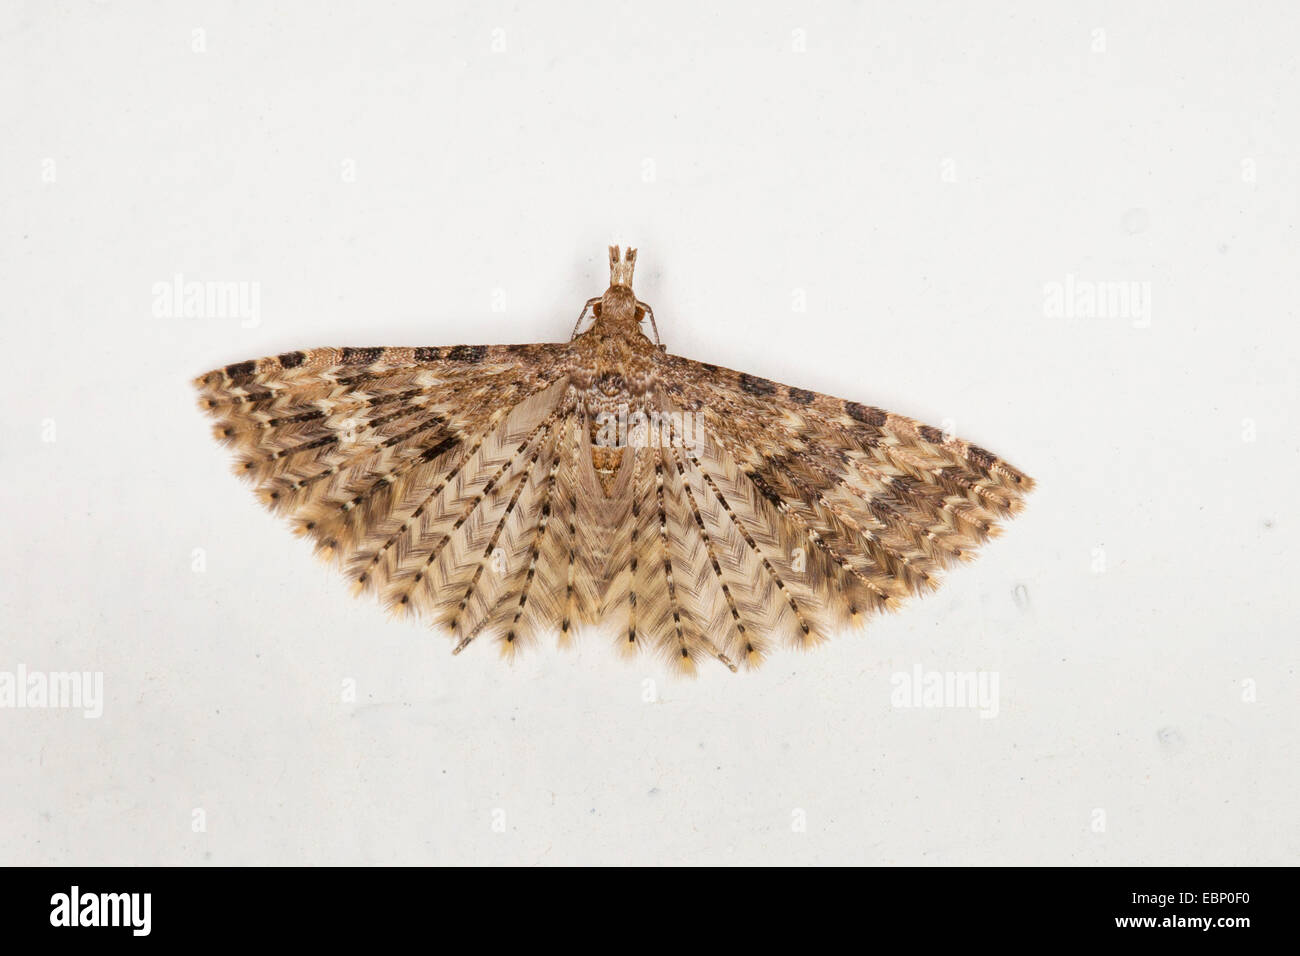 Vingt-plume Moth, vingt plume moth, vingt-papillon à plumes, beaucoup de plumes-moth (Alucita hexadactyla, Alucita hexadactyla polydactyla, Phalaena), aux ailes déployées sur fond blanc, Allemagne Banque D'Images